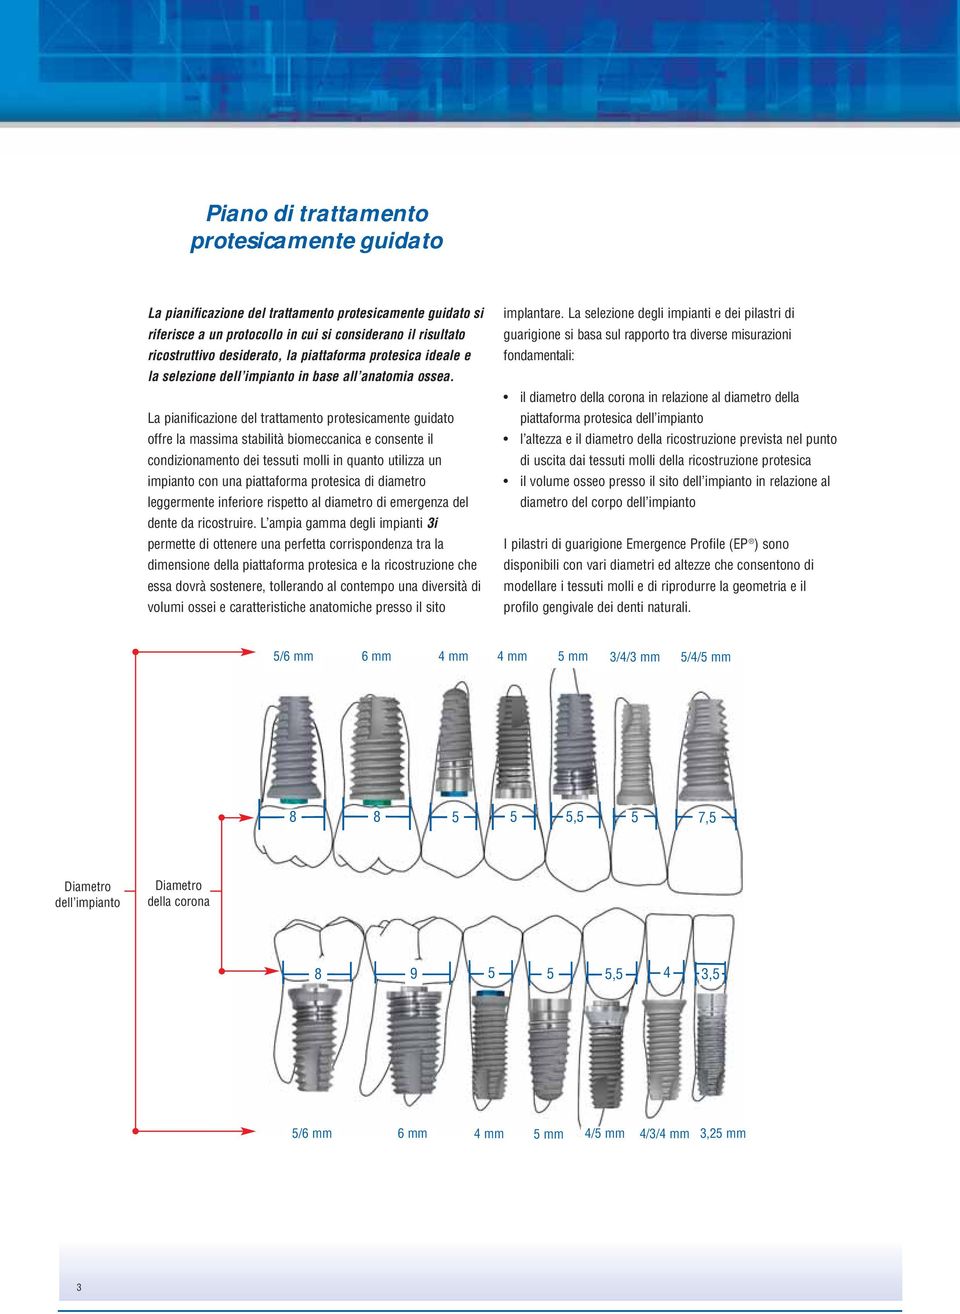 La pianificazione del trattamento protesicamente guidato offre la massima stabilità biomeccanica e consente il condizionamento dei tessuti molli in quanto utilizza un impianto con una piattaforma